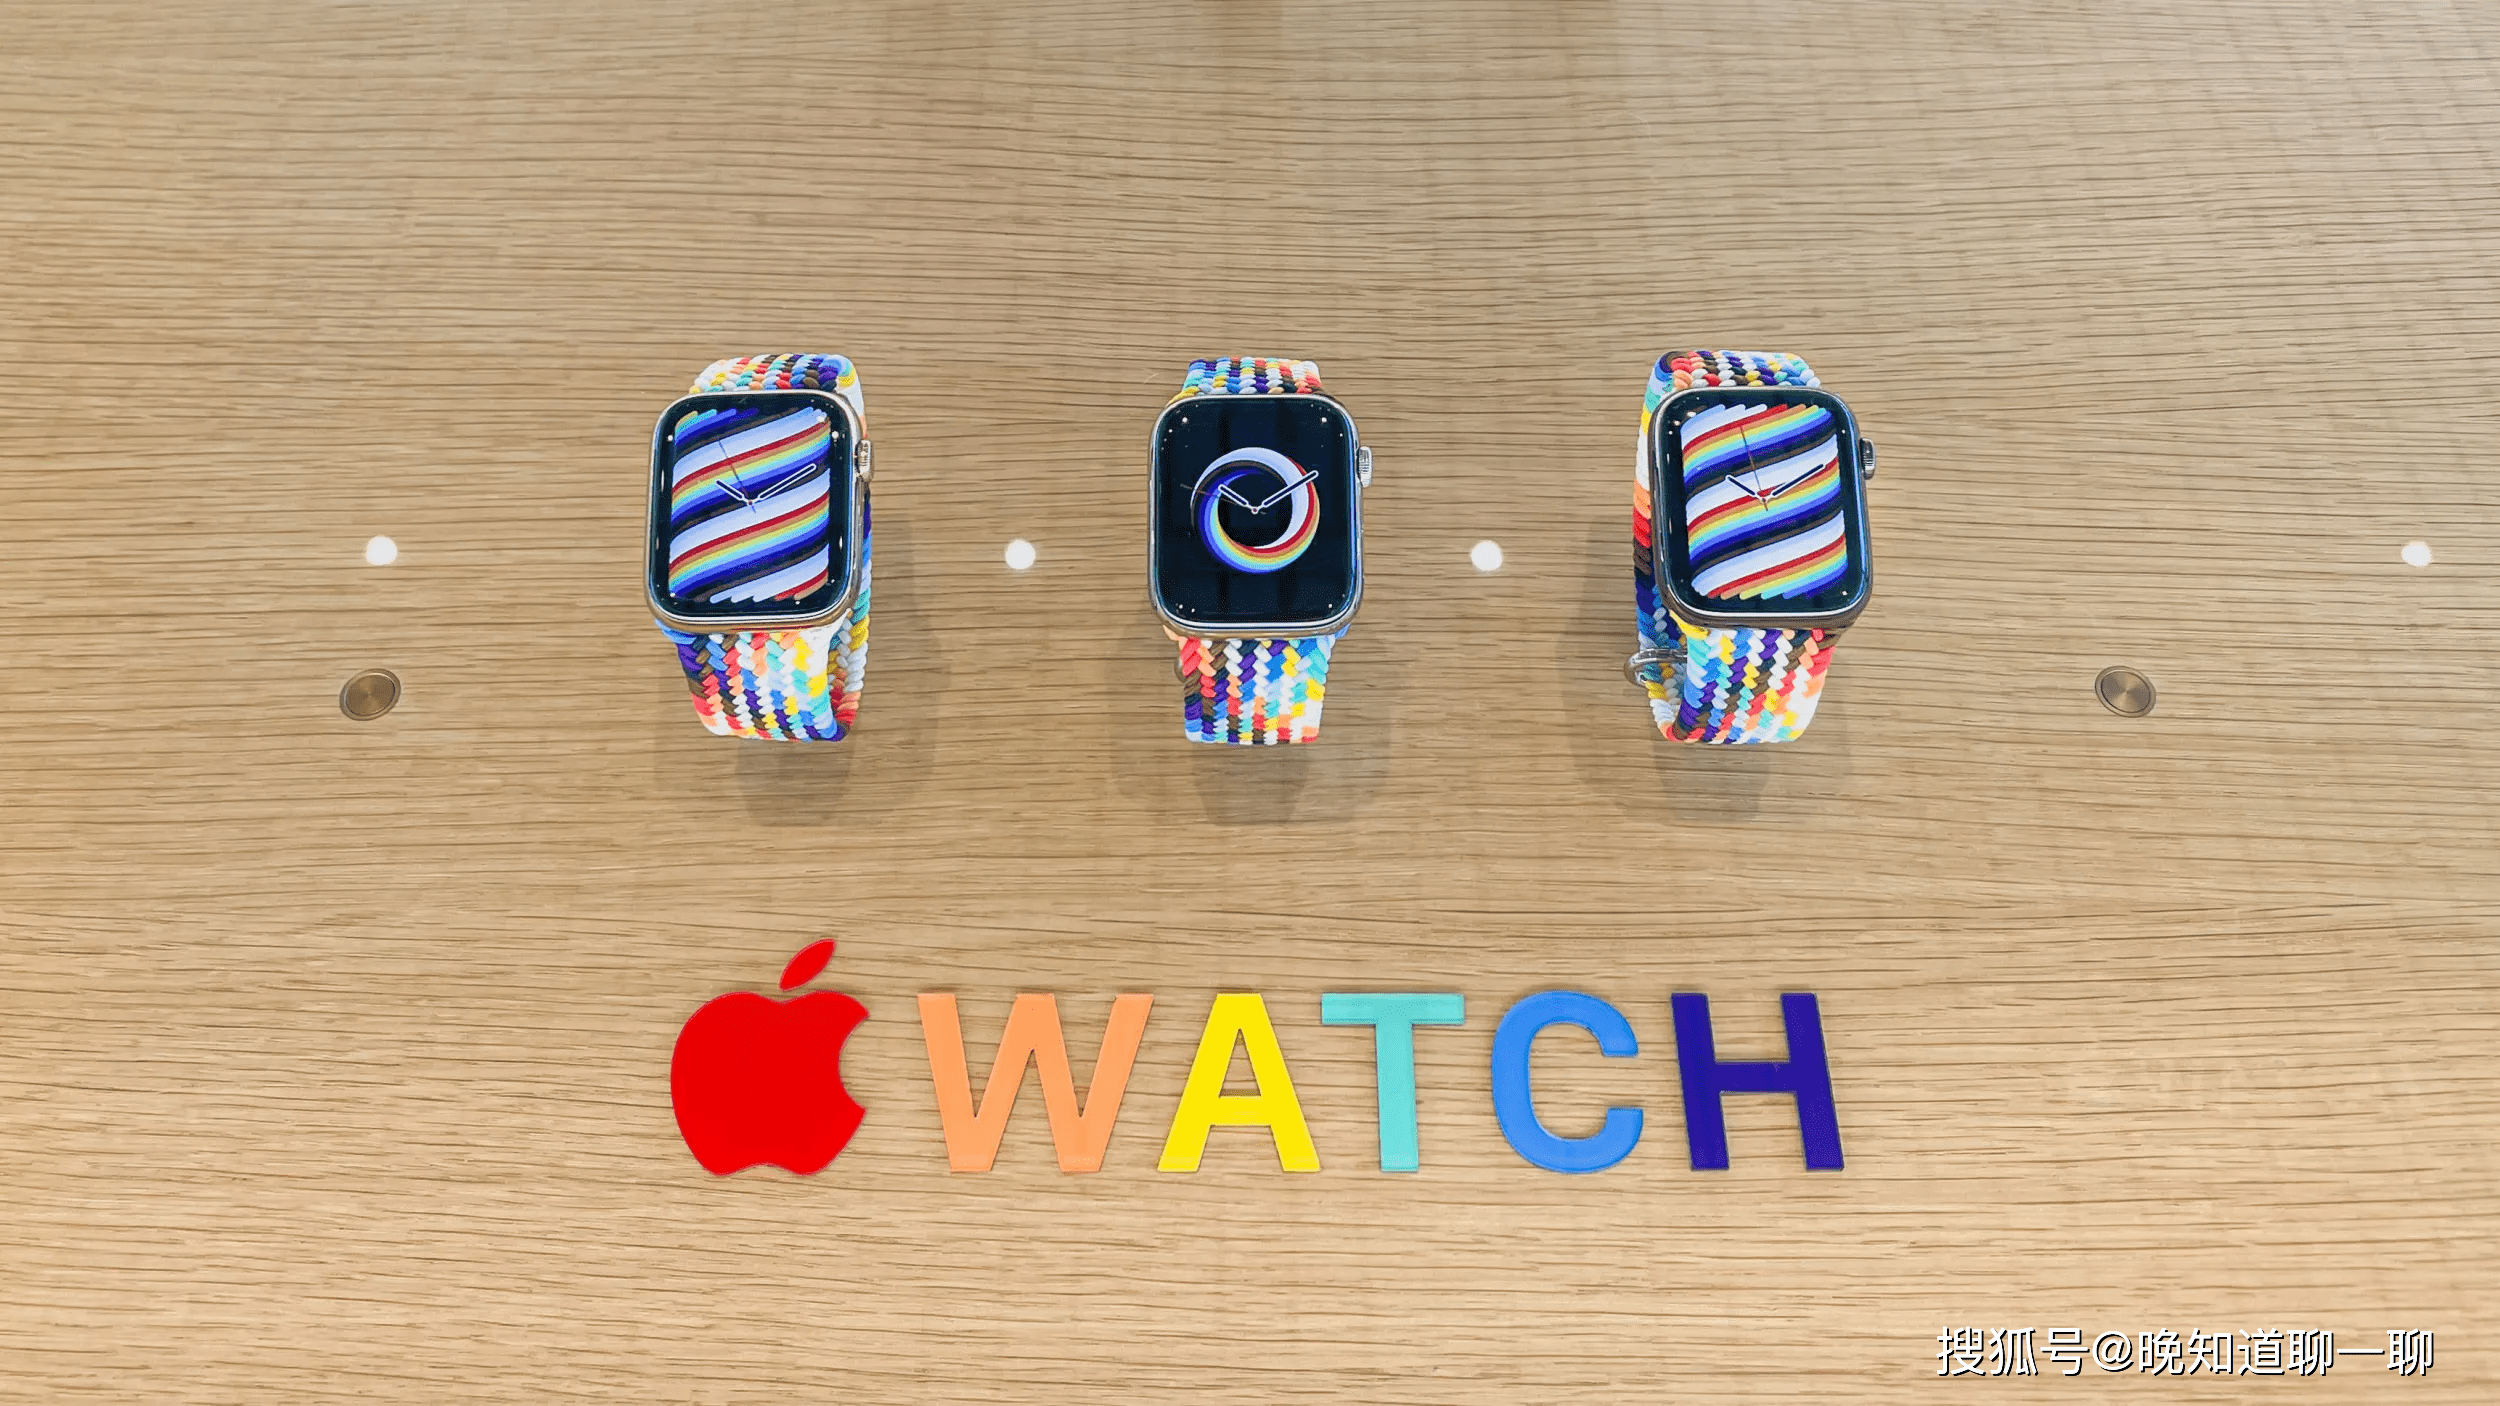 Apple Watch彩虹表盘图片